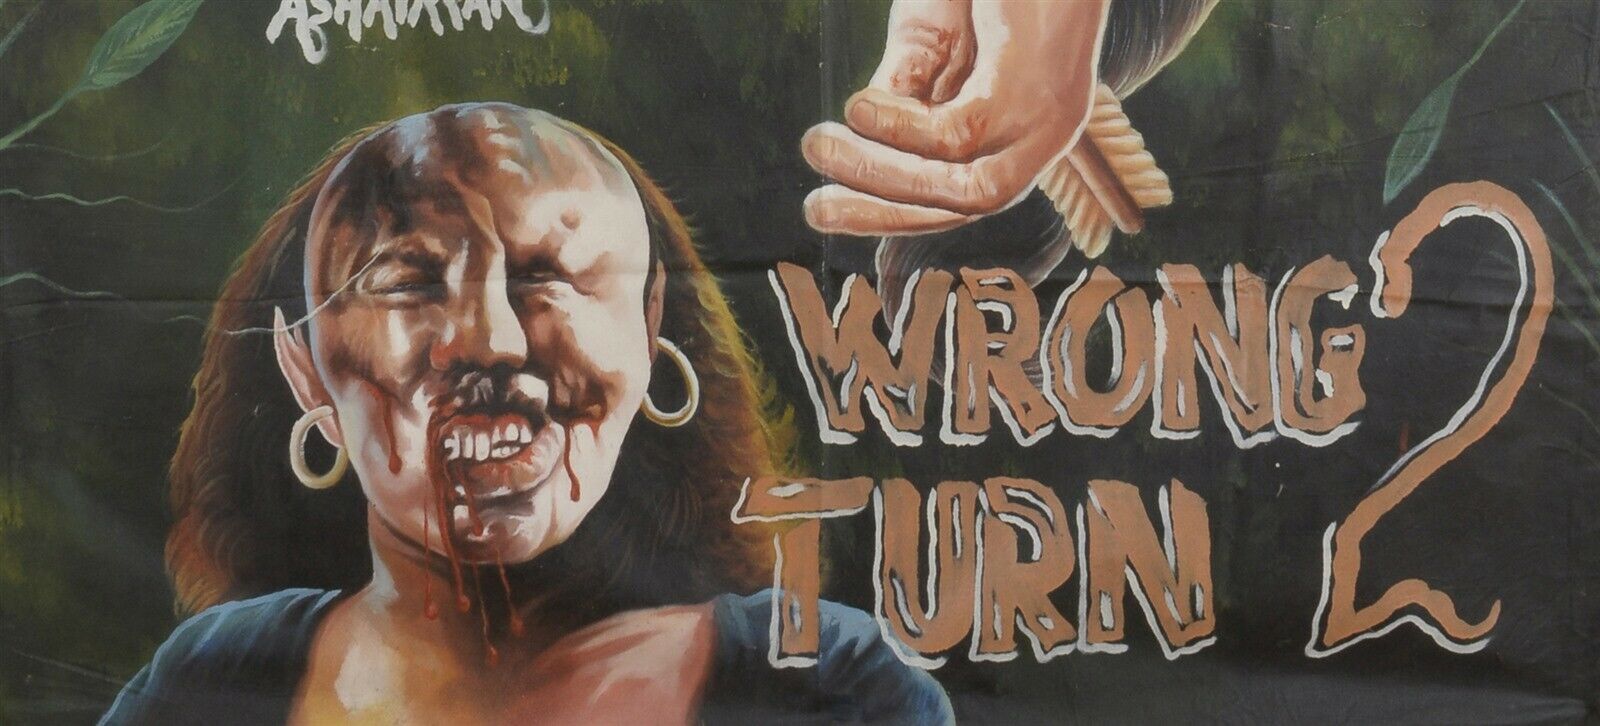 Αφίσα ταινίας της Γκάνας Αφρικανικός κινηματογράφος λαϊκός τοίχος ζωγραφισμένος στο χέρι ΛΑΘΟΣ ΣΤΡΟΦΗ 2 - Tribalgh